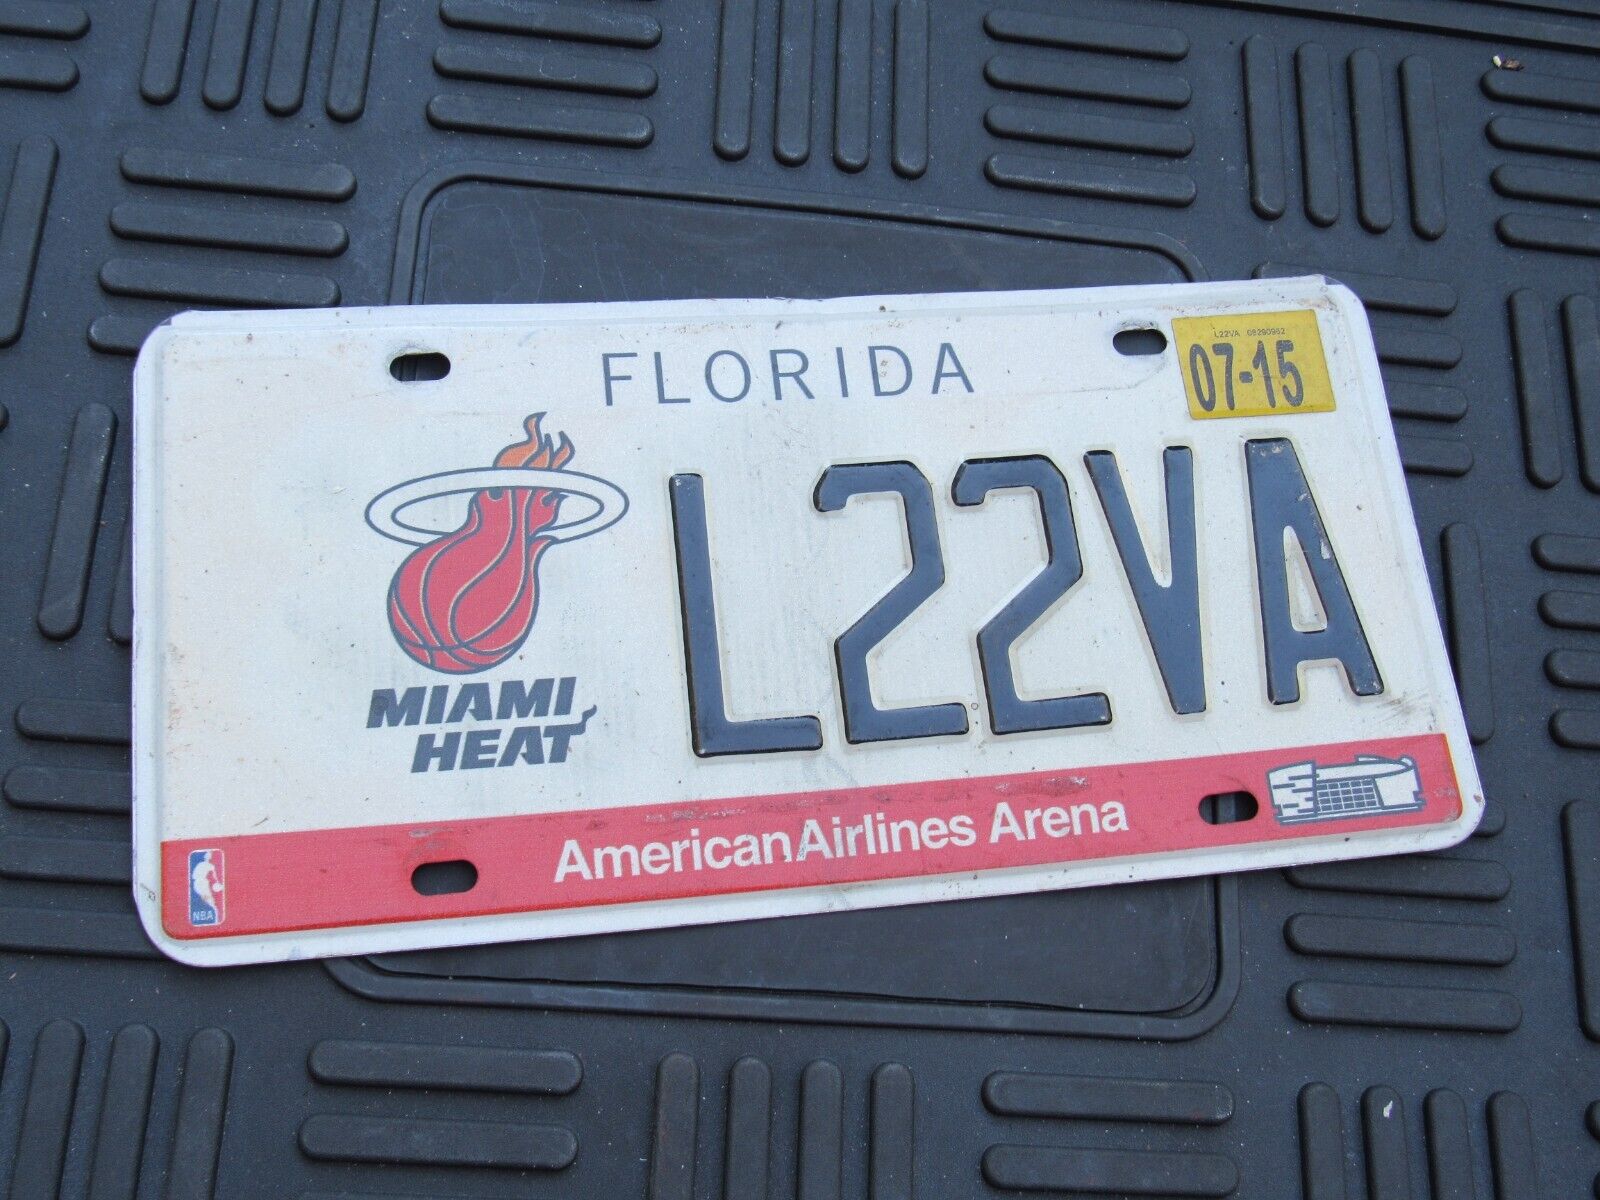 2015 Florida Miami Heat License Plate